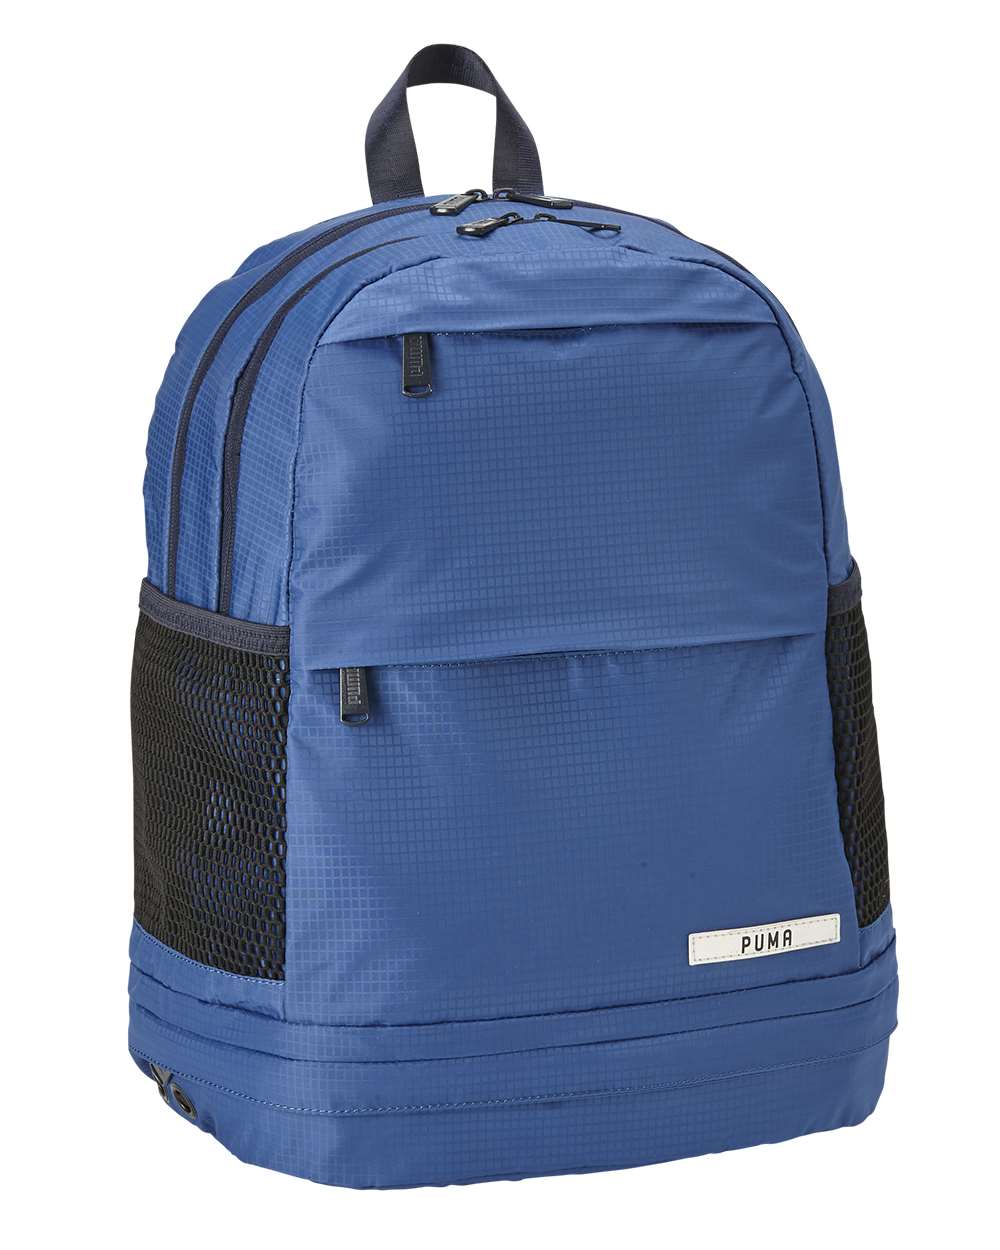 PUMA PSC1053 - Fashion Show Pocket Backpack